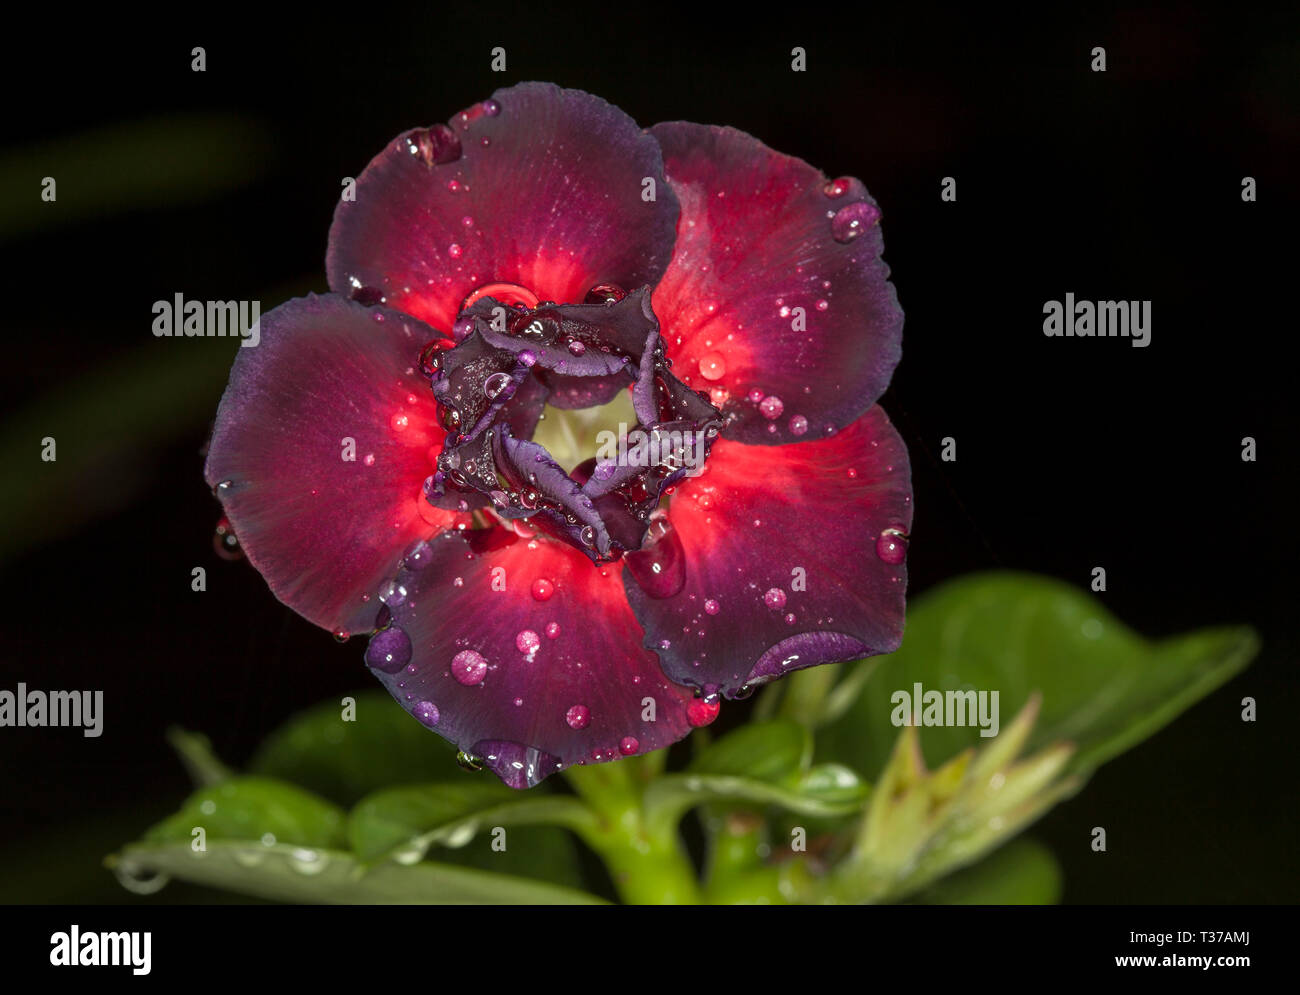 Superbe et insolite double fleur rouge foncé / noire d'Adenium obesum 'Black Dragon' avec des gouttes de pluie sur les pétales, African Desert Rose, sur fond sombre Banque D'Images